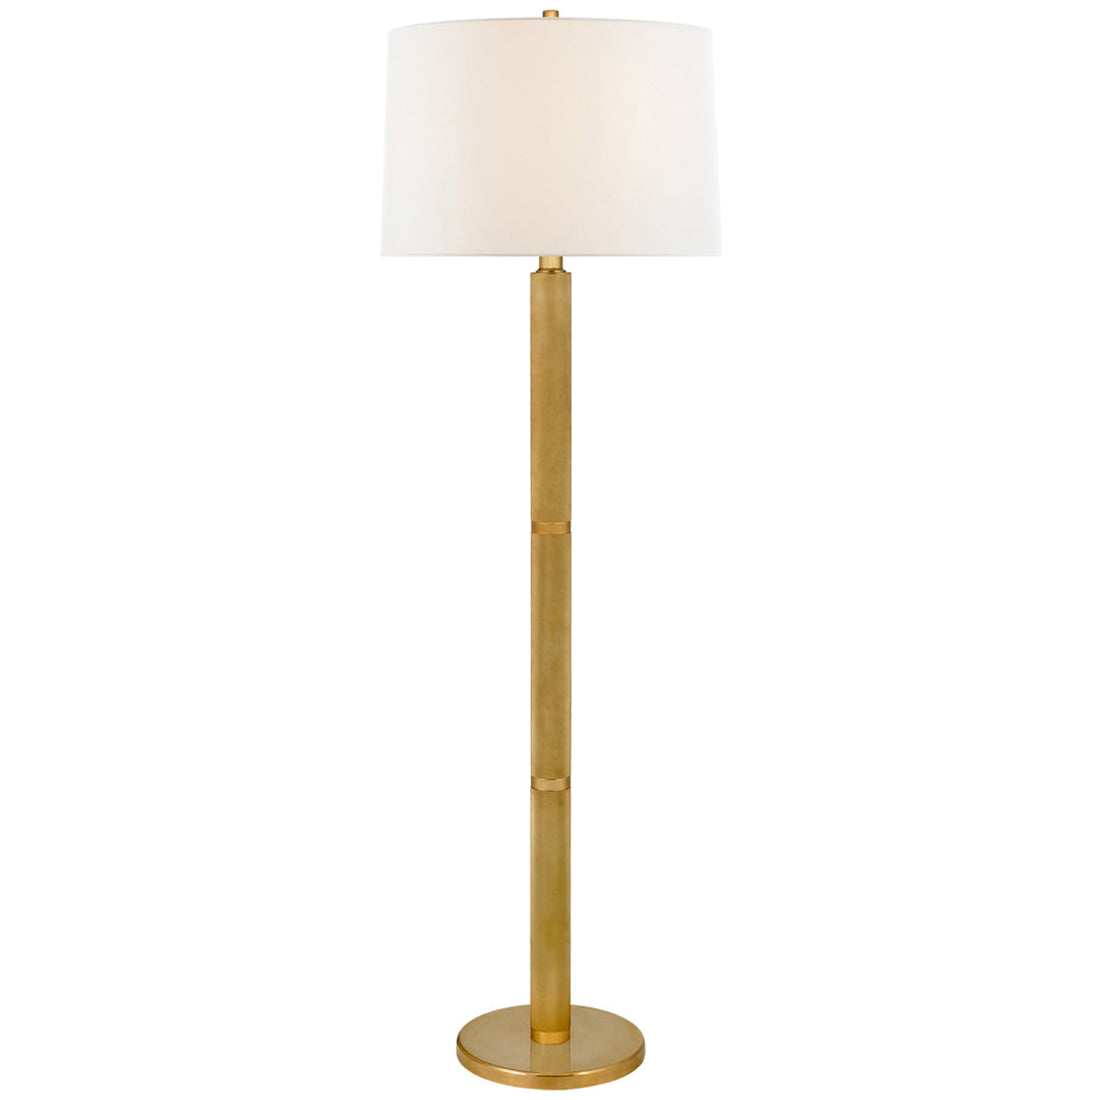 Visual Comfort, Barrett Large Knurled Floor Lamp, Floor Lamps